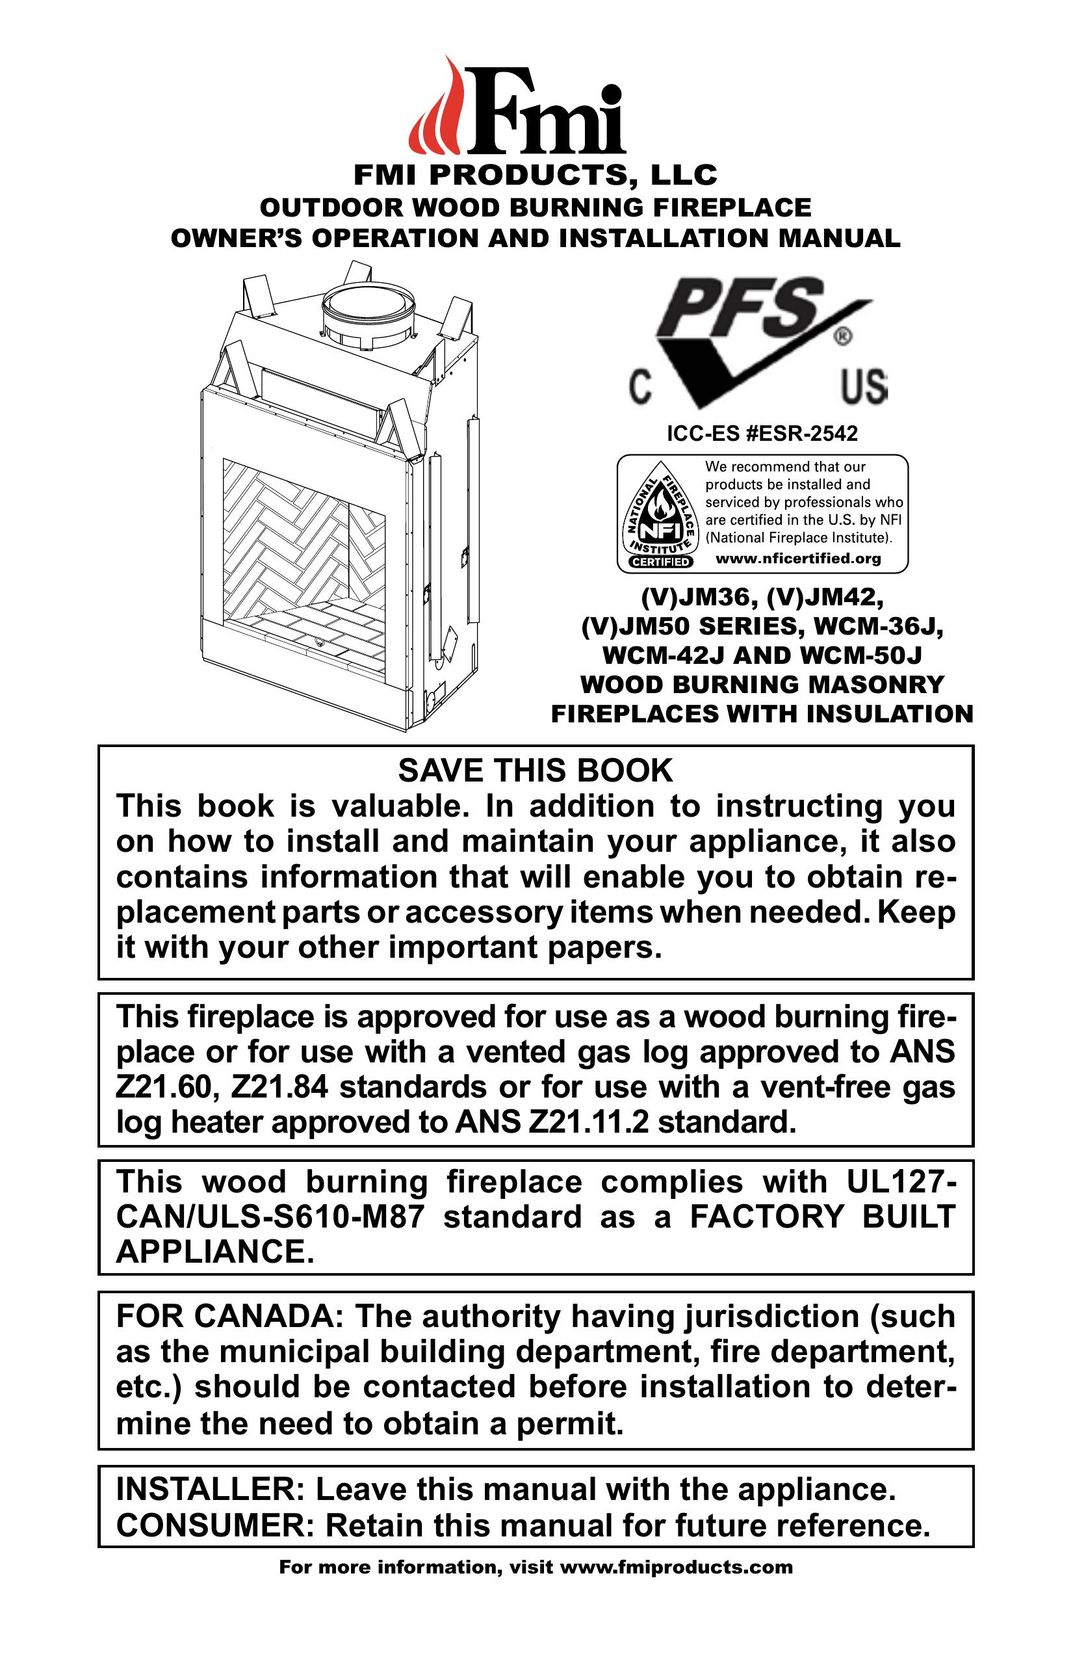 FMI (V)JM42 Indoor Fireplace User Manual